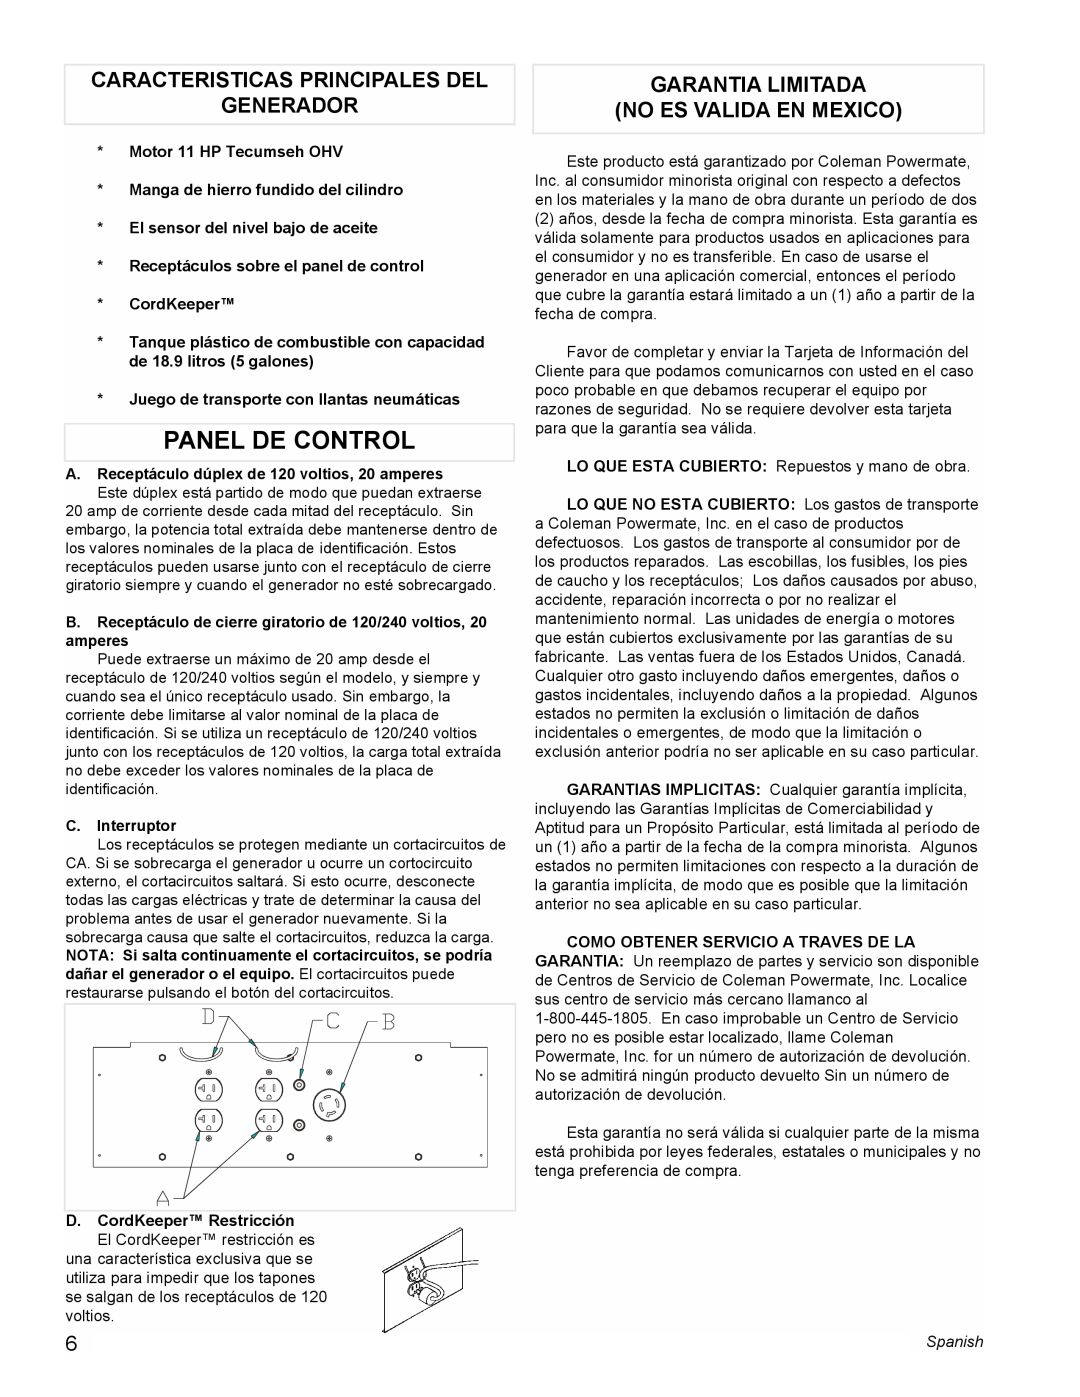 Powermate PMA525500 Panel De Control, Caracteristicas Principales Del Generador, Garantia Limitada No Es Valida En Mexico 